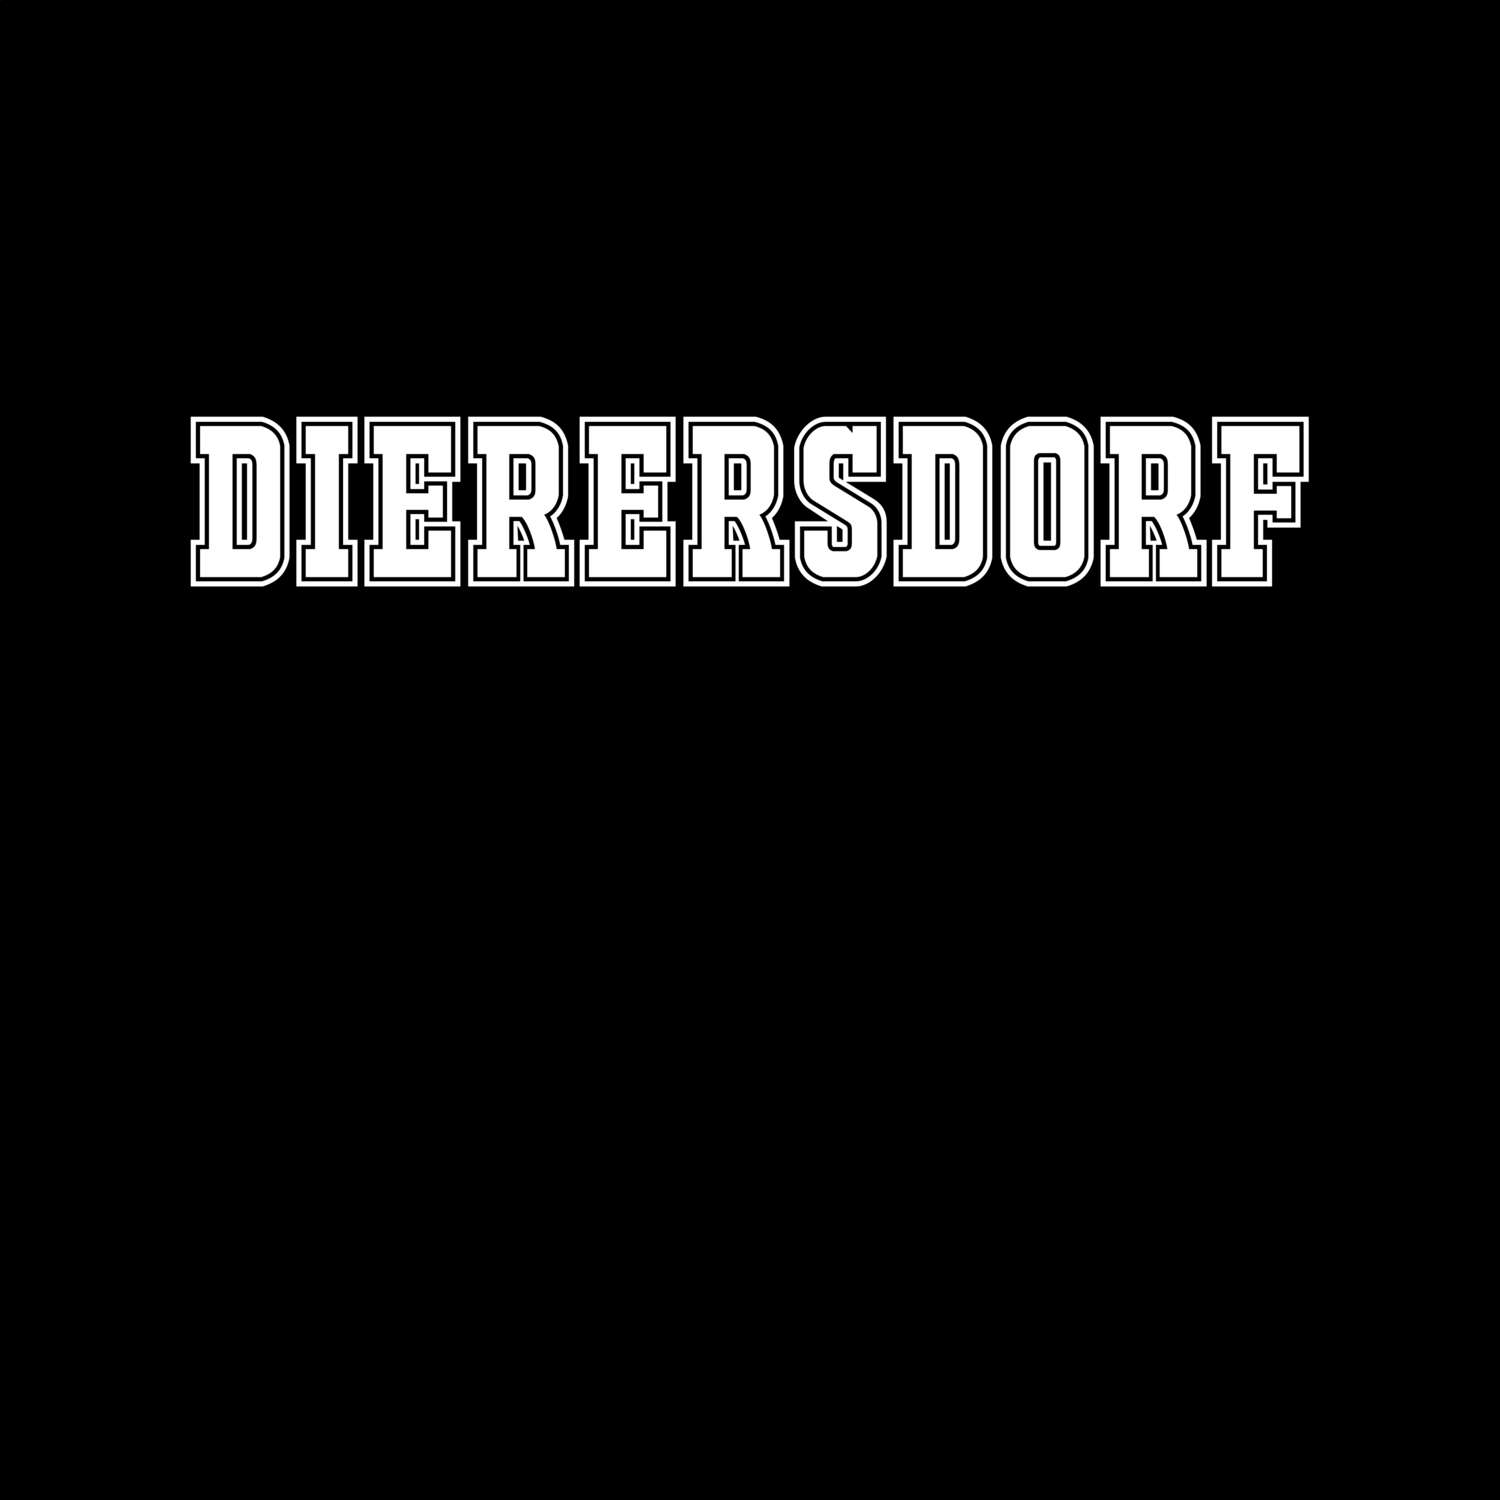 Dierersdorf T-Shirt »Classic«